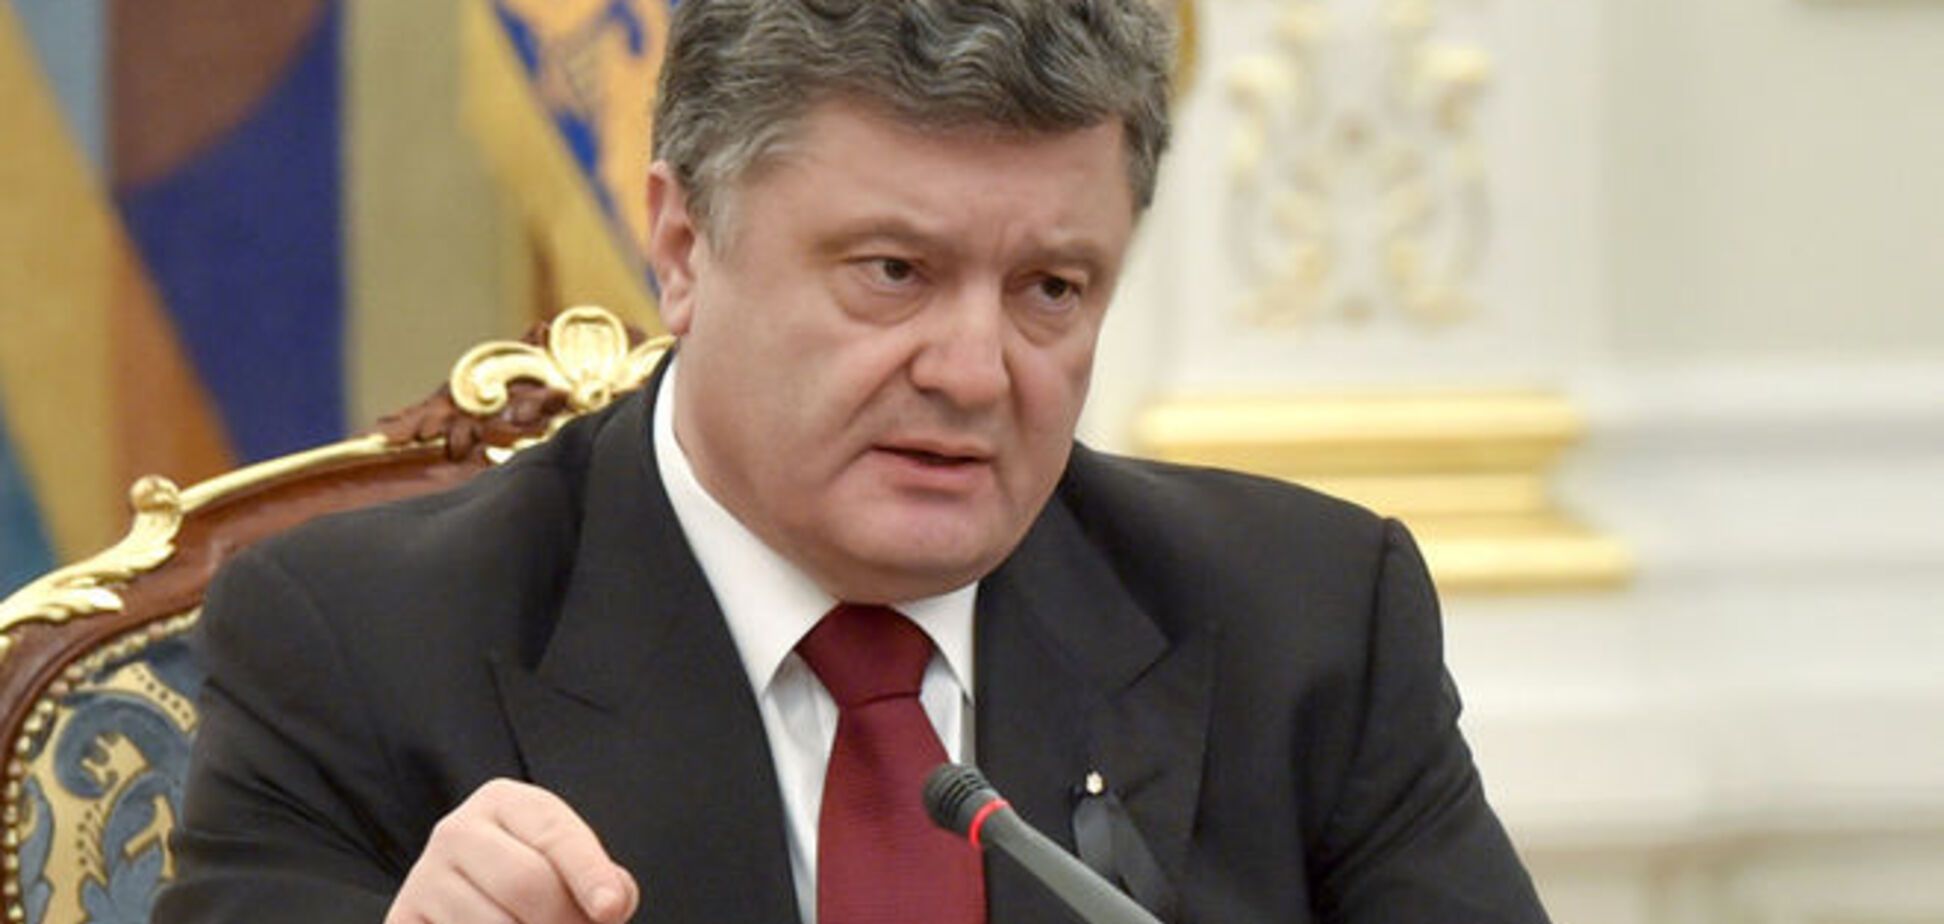 Расстояние от волонтера к президенту в Украине сокращается - Порошенко